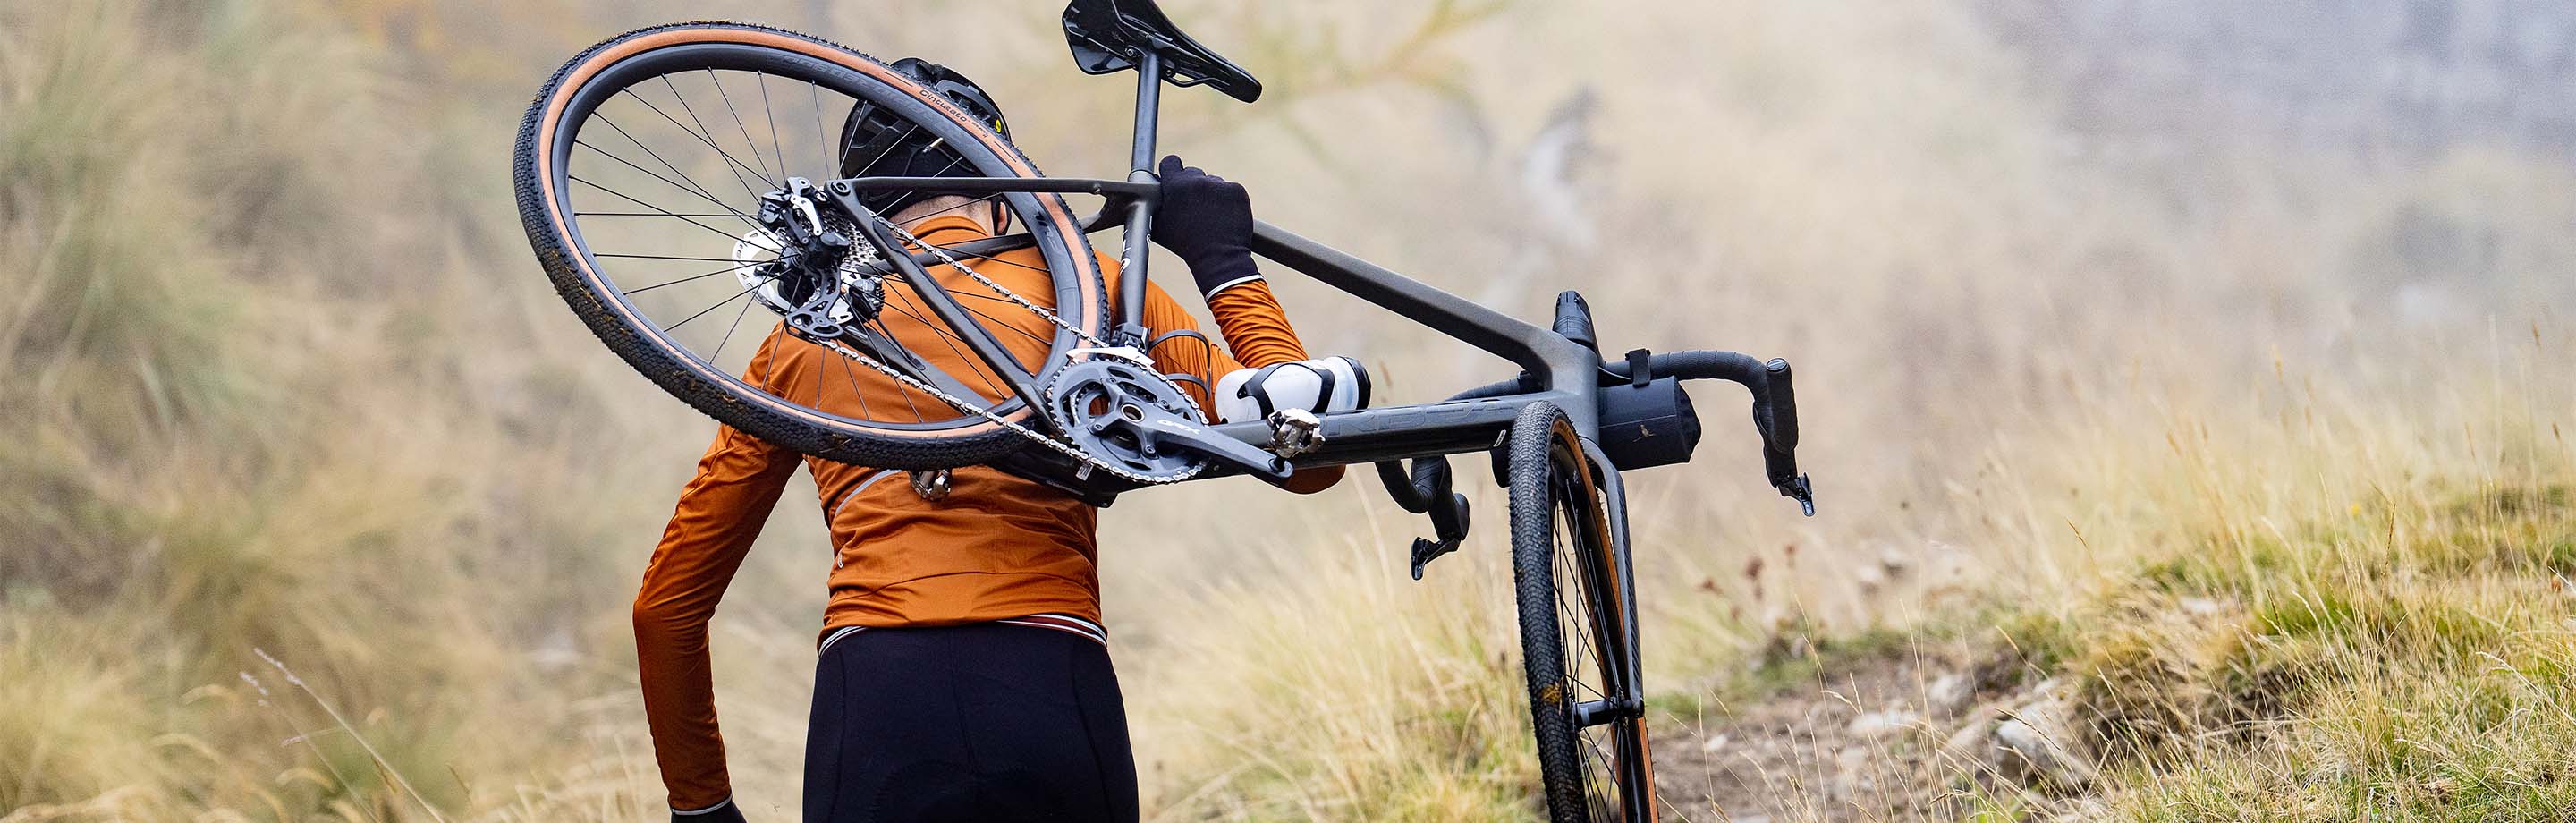 Shimano – Composants, accessoires de vélo et vêtements haut de gamme